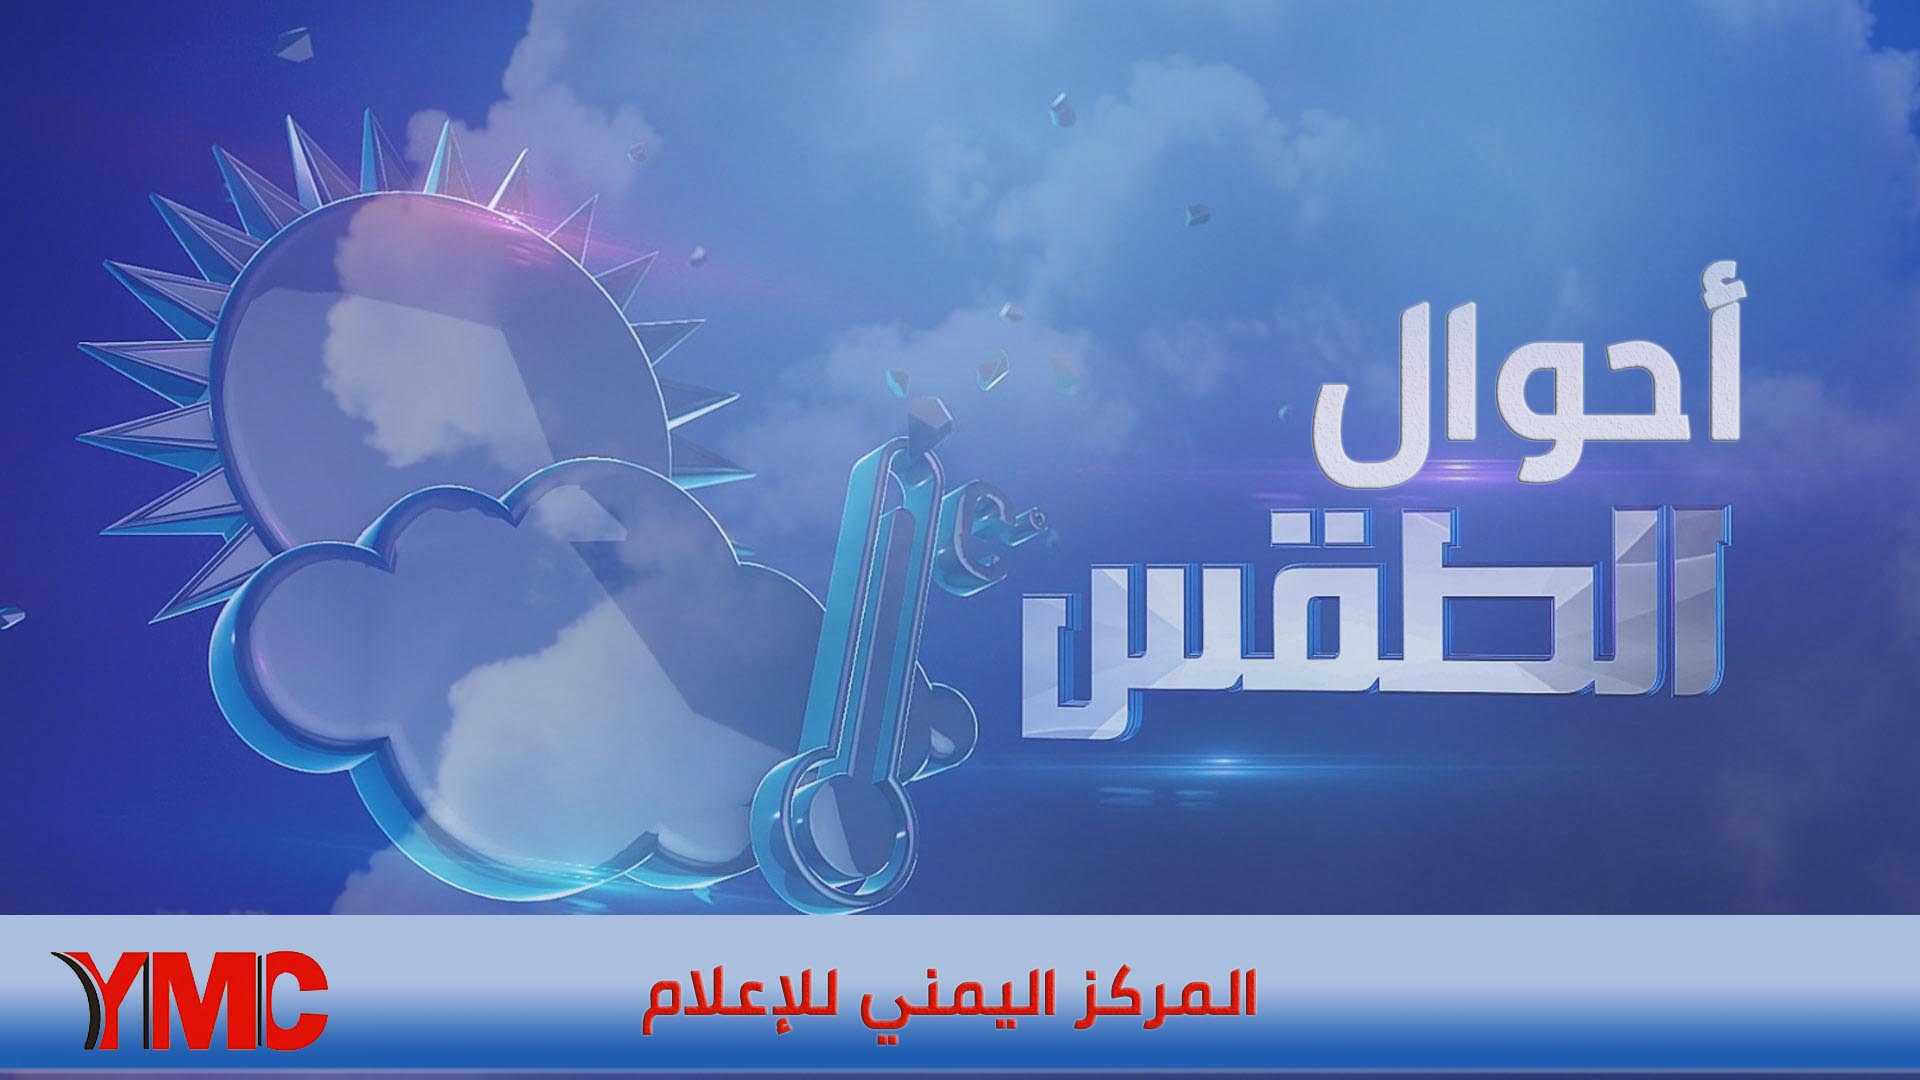 المركز الوطني للأرصاد الجوية اليمنية يكشف عما سيحدث خلال ال24 الساعة القادمة